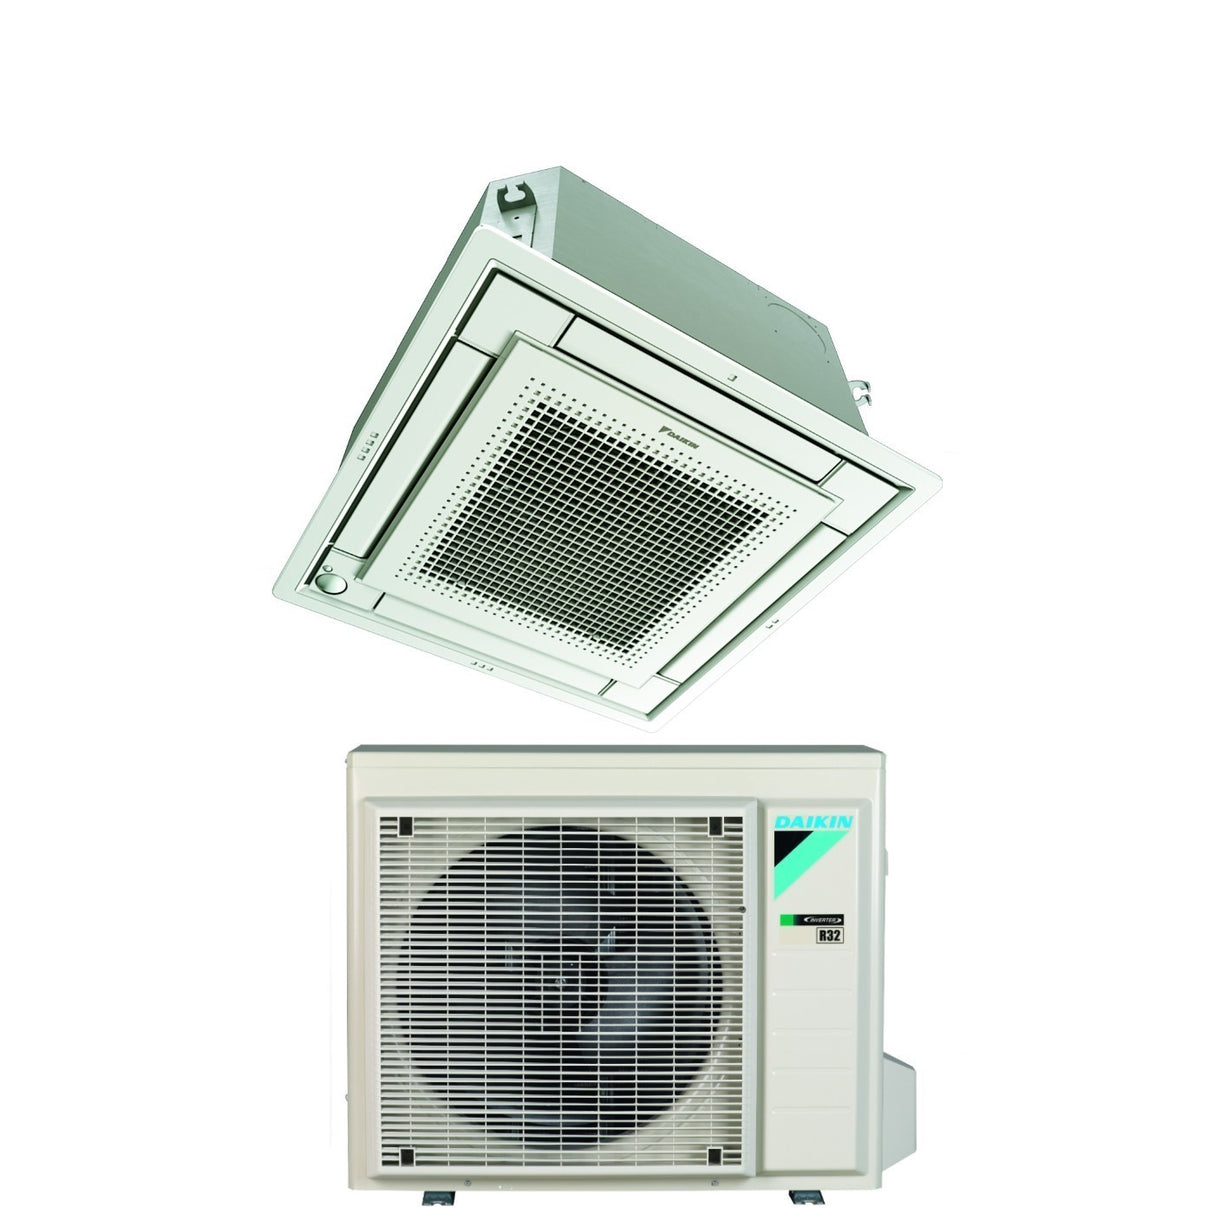 immagine-25-daikin-climatizzatore-condizionatore-daikin-a-cassetta-fully-flat-12000-btu-ffa35a9-r-32-wi-fi-optional-con-griglia-inclusa-classe-aa-garanzia-italiana